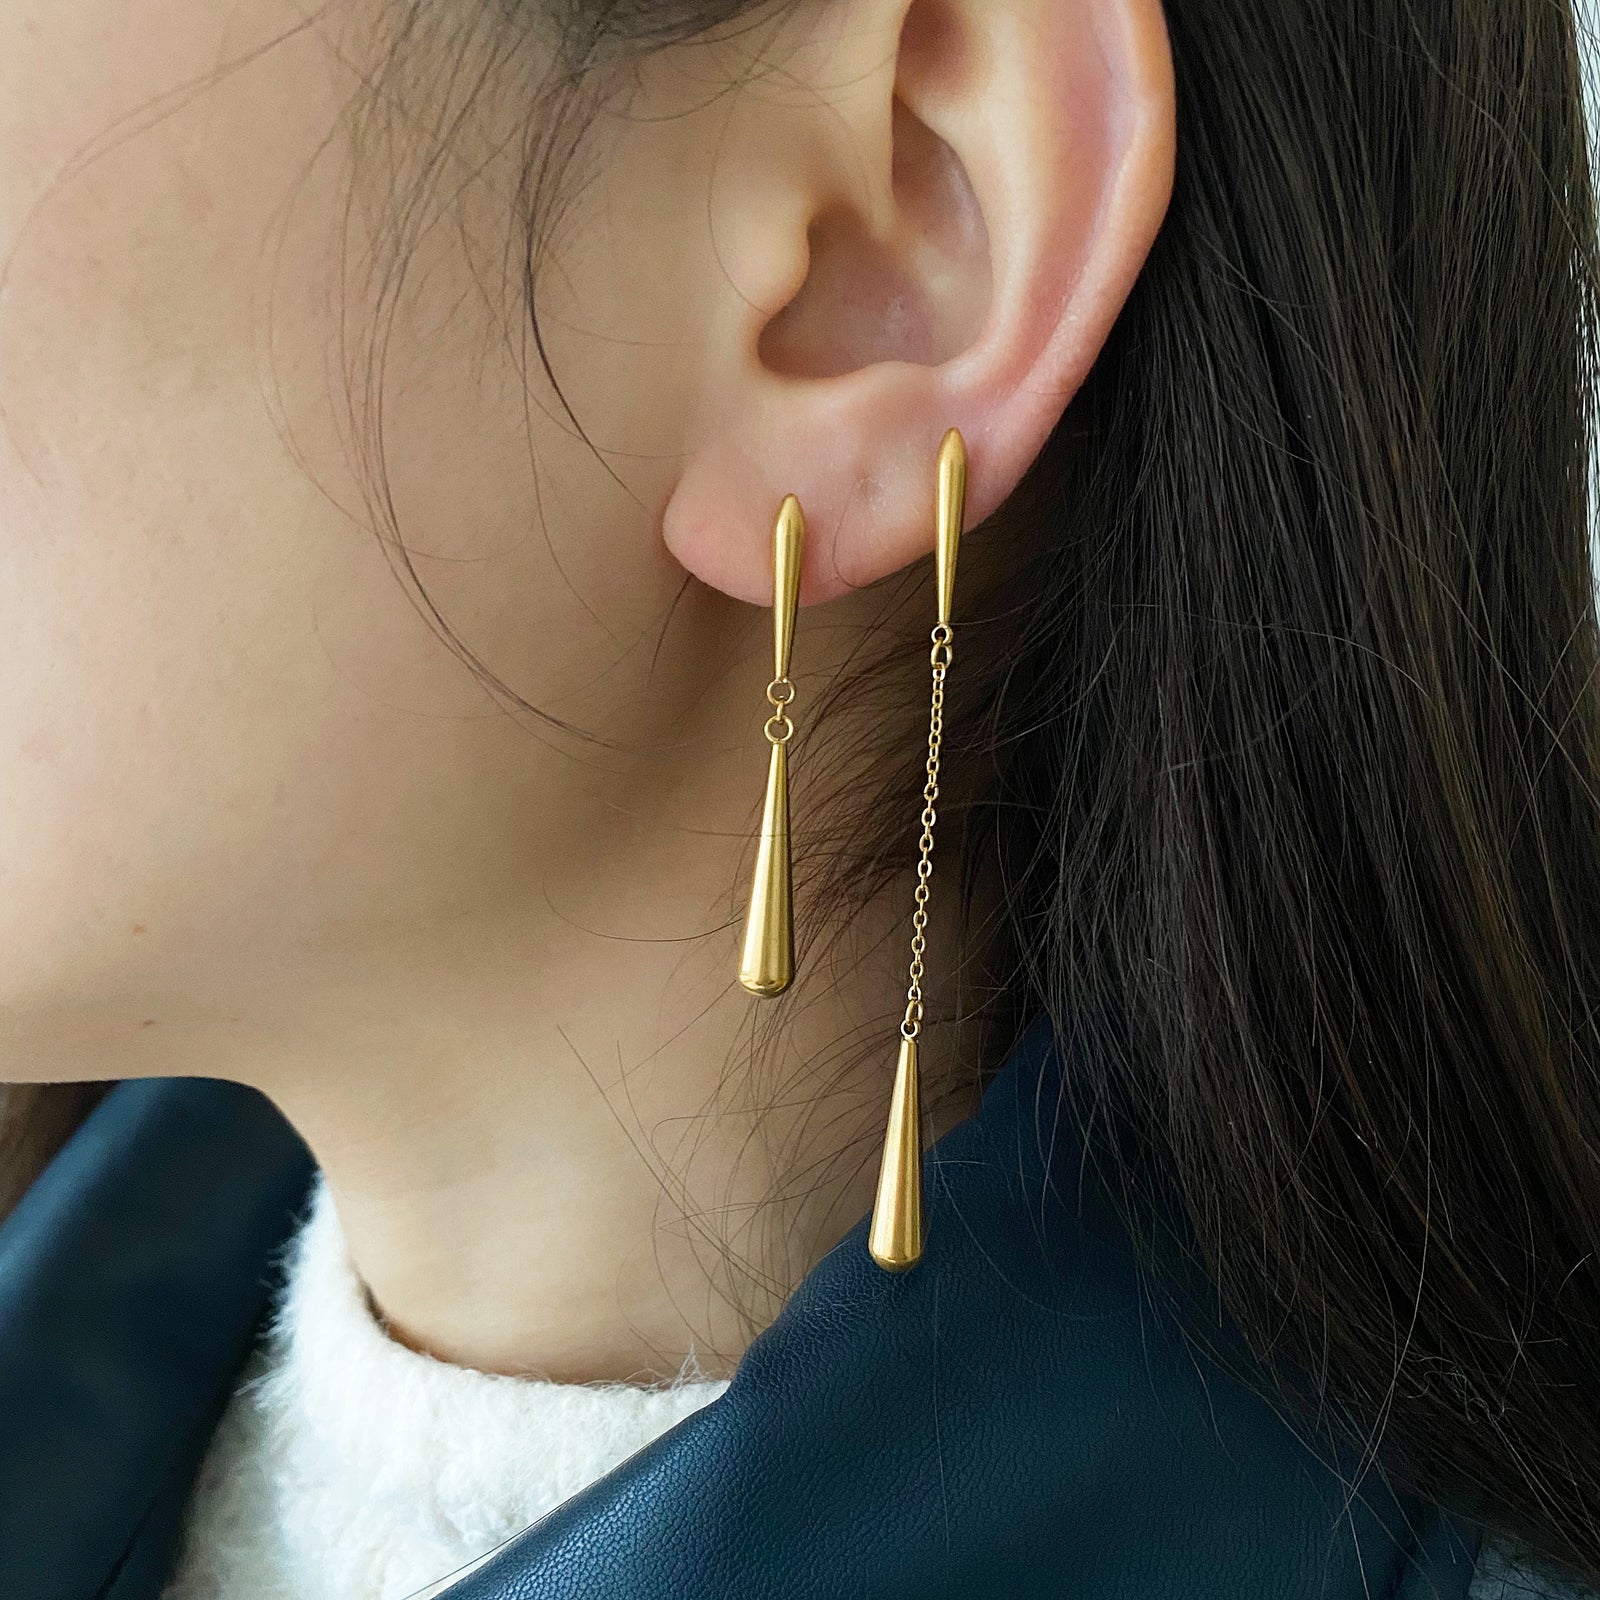 Meideya Jewelry long teardrop earrings set